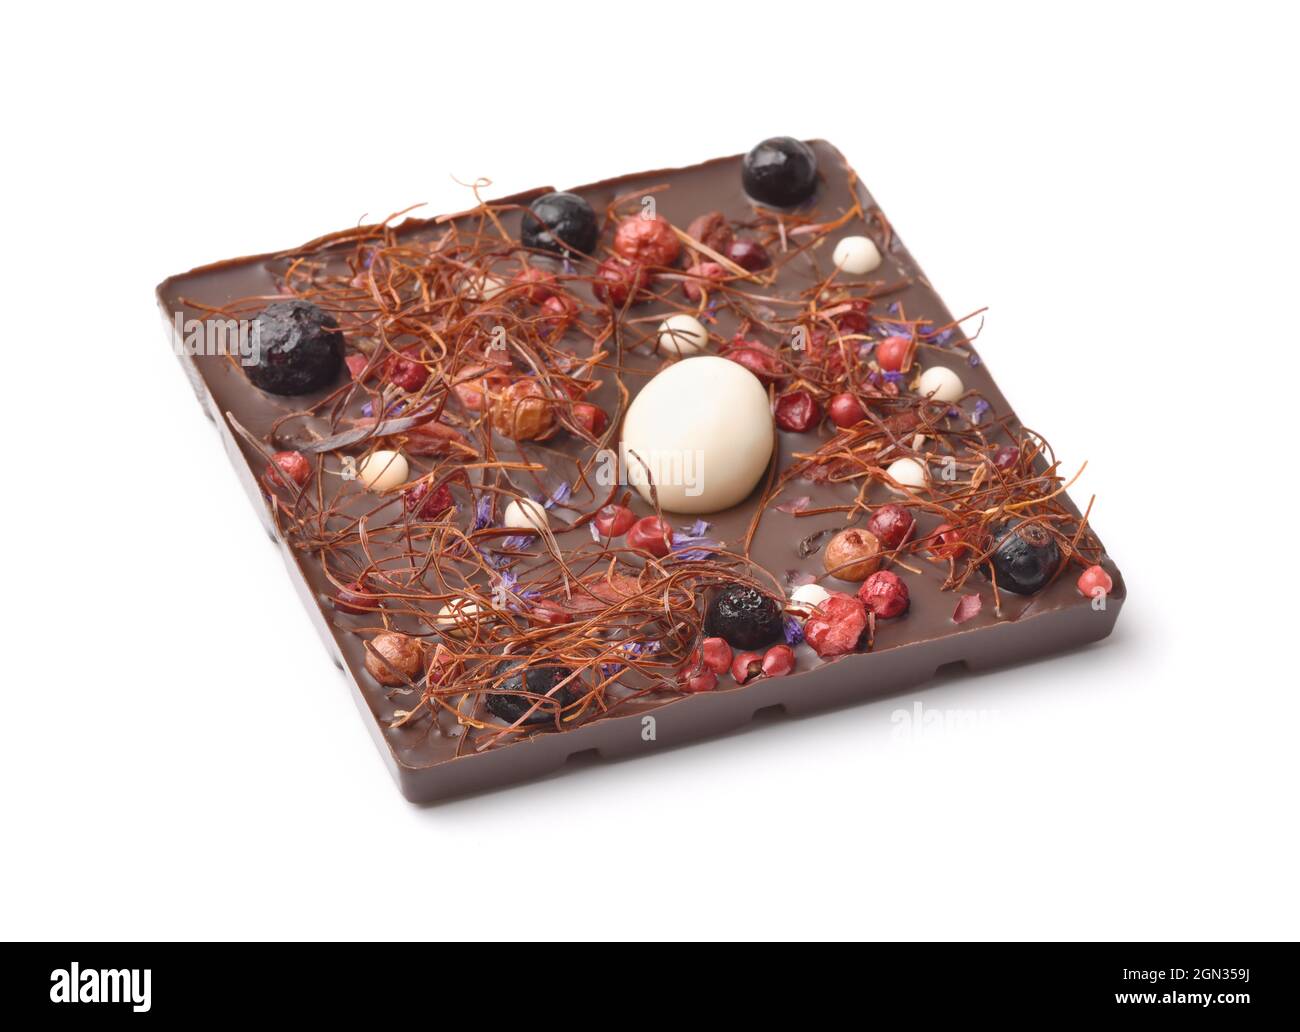 Handmade dark chocolate with berries isolated on white Stock Photo